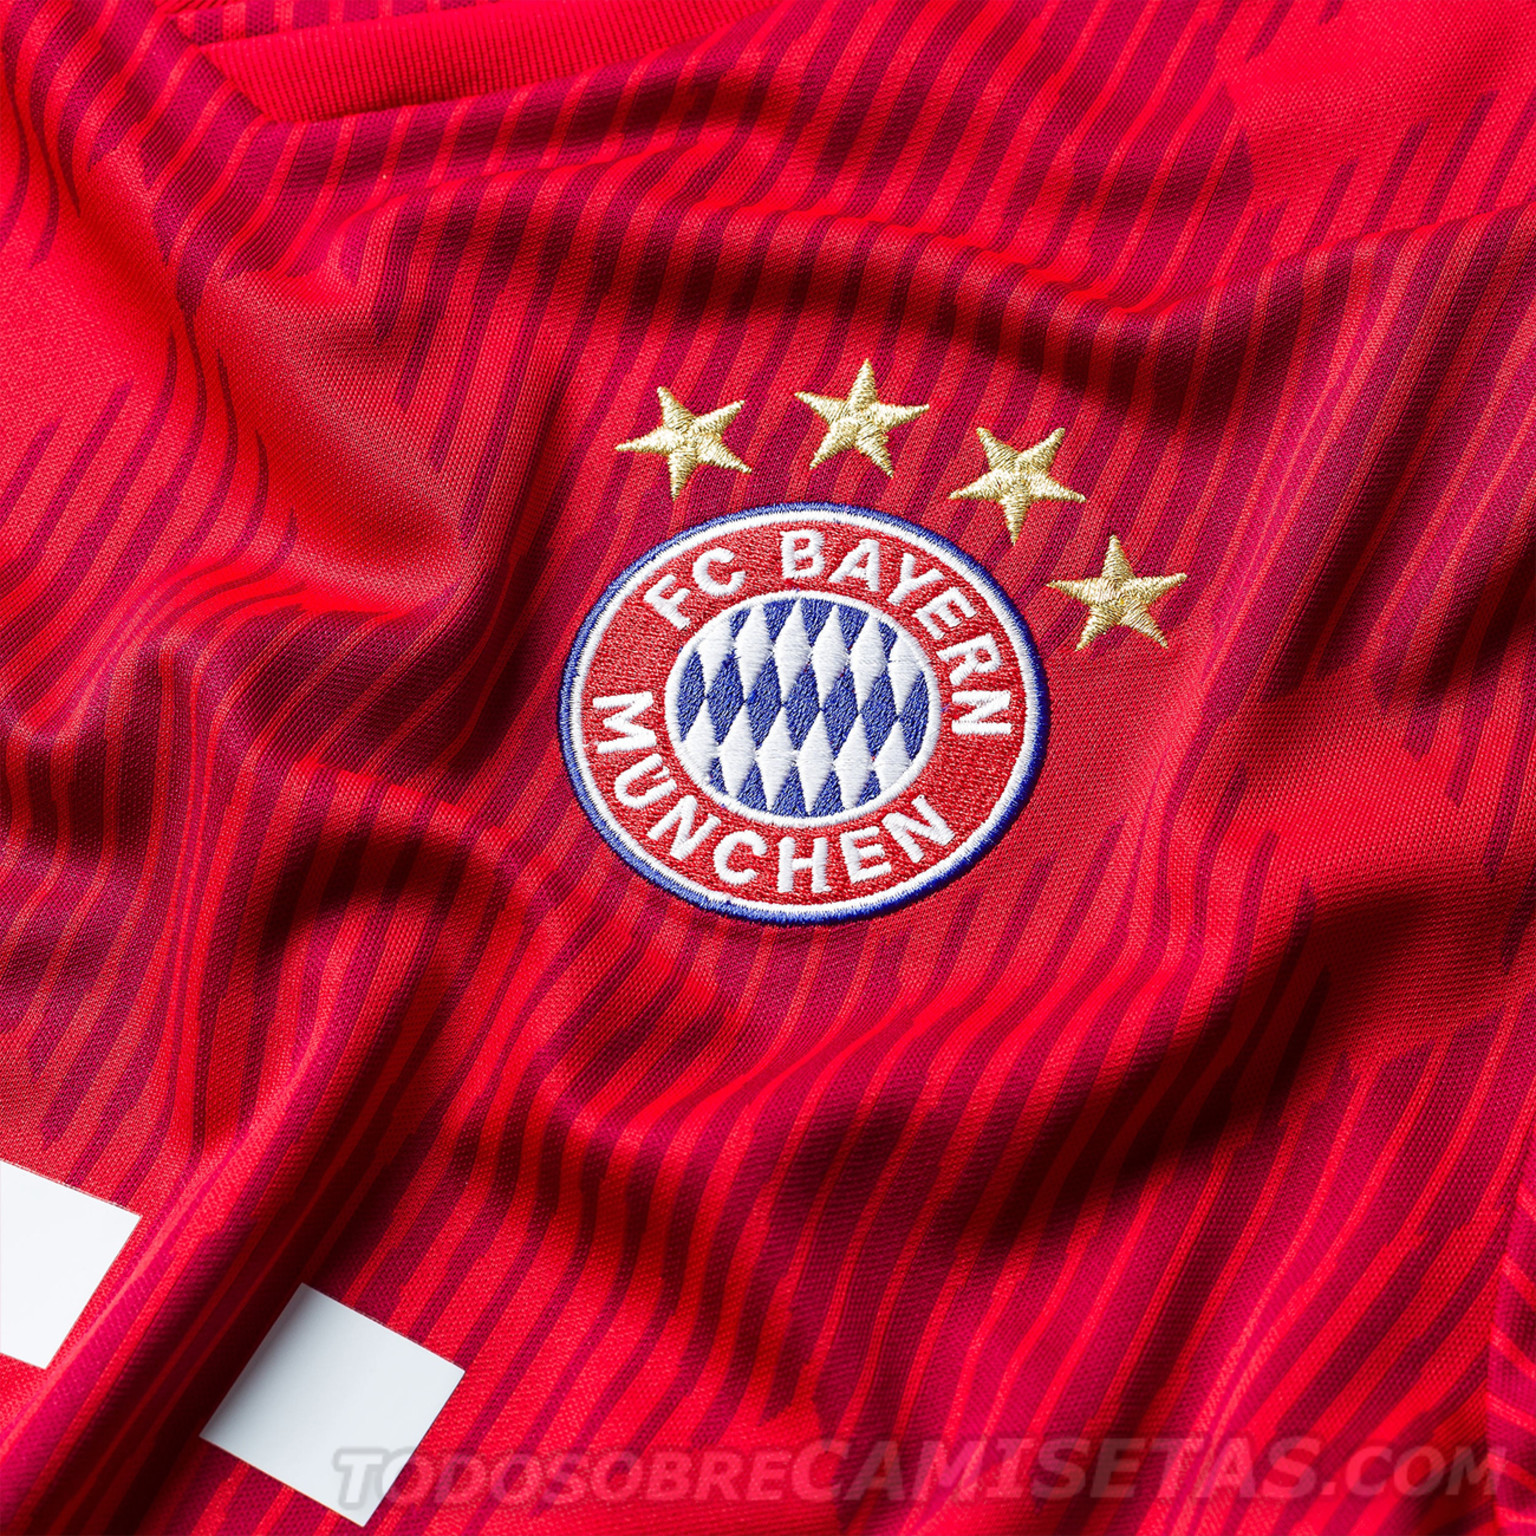 Bayern Munich 2018-19 adidas Home Kit